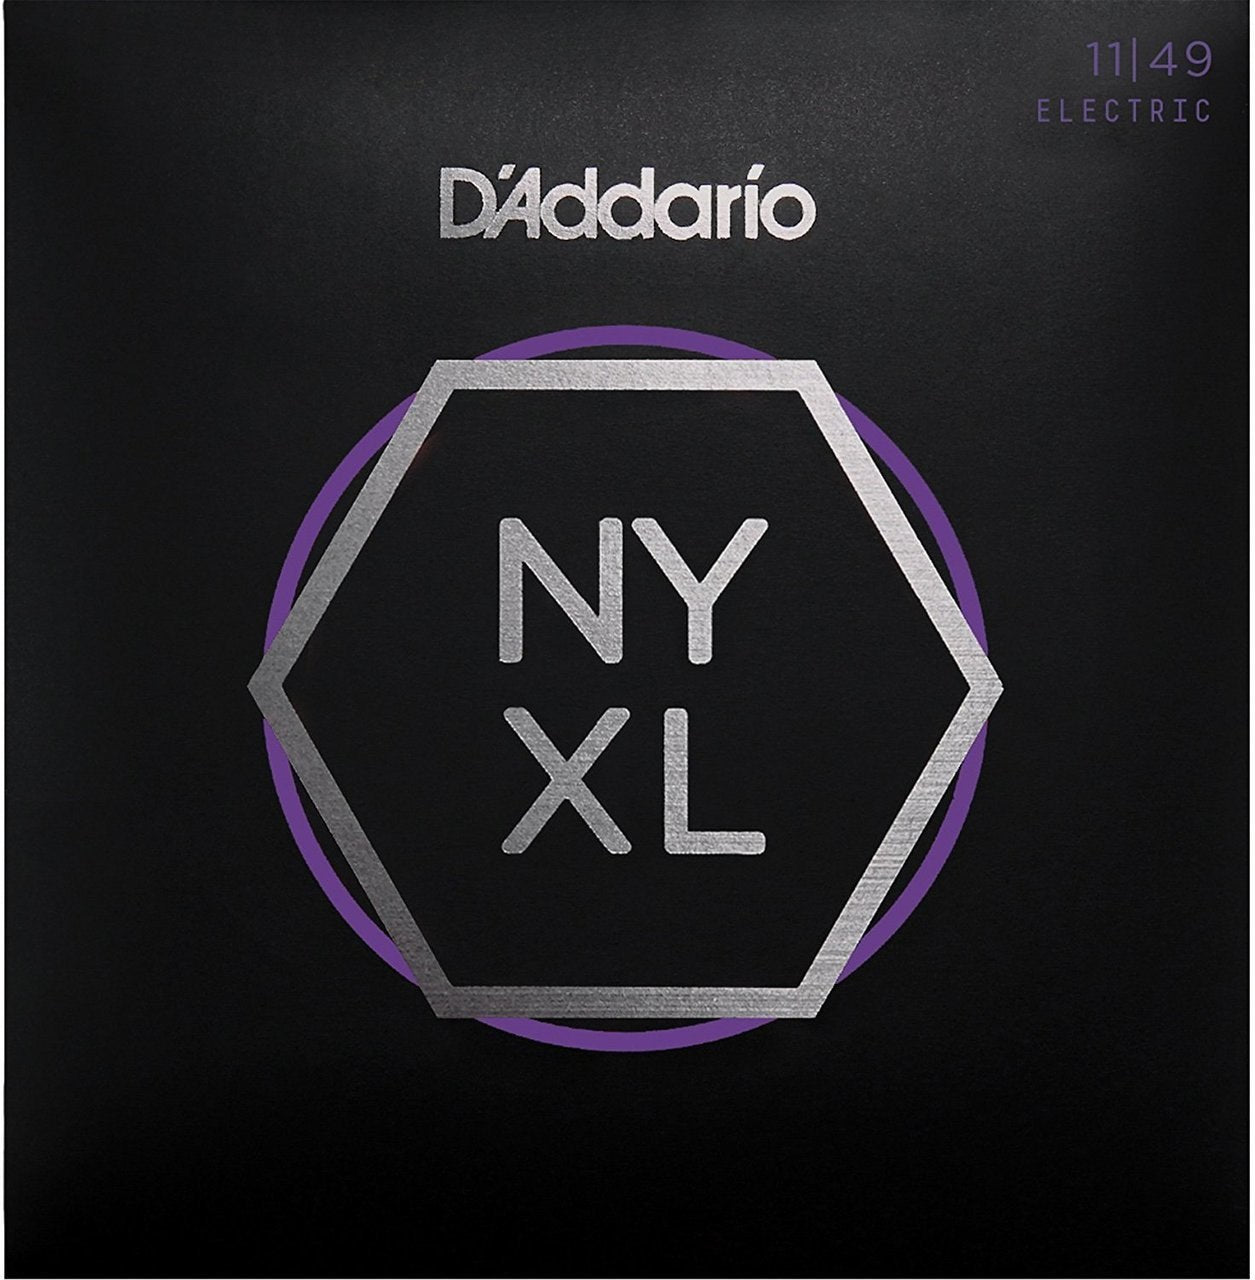 D'Addario NYXL 11-49 Electric Guitar String Set